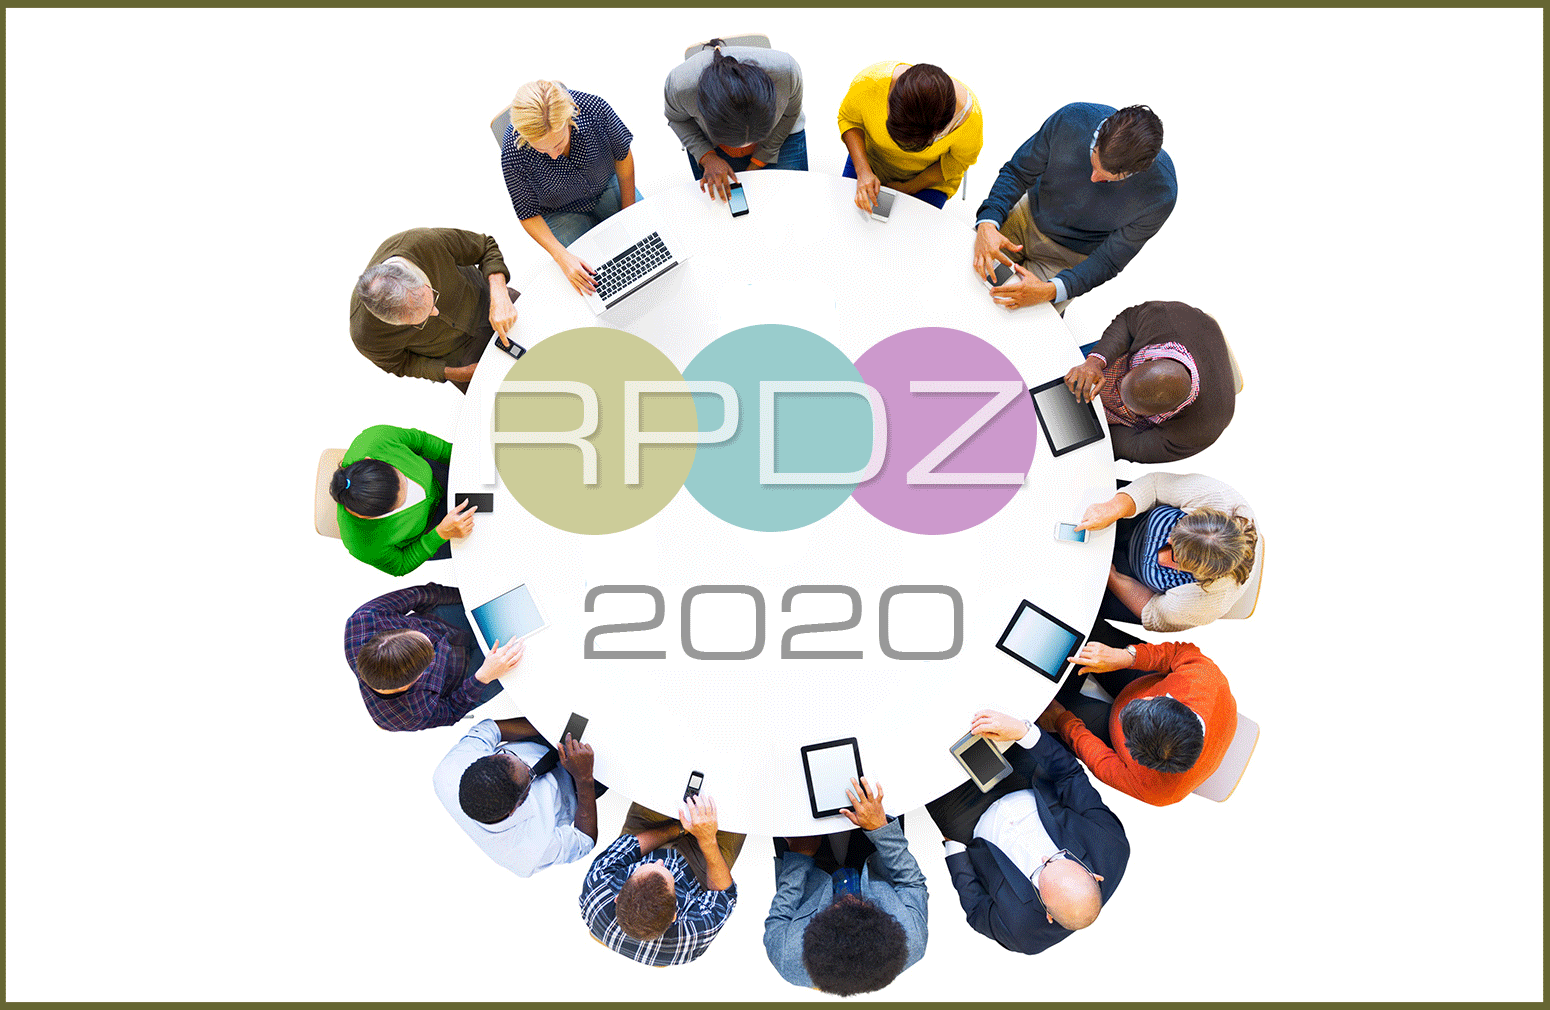 Mobilność zawodowa, kompetencje przyszłości, partnerstwo - wyzwania na 2020